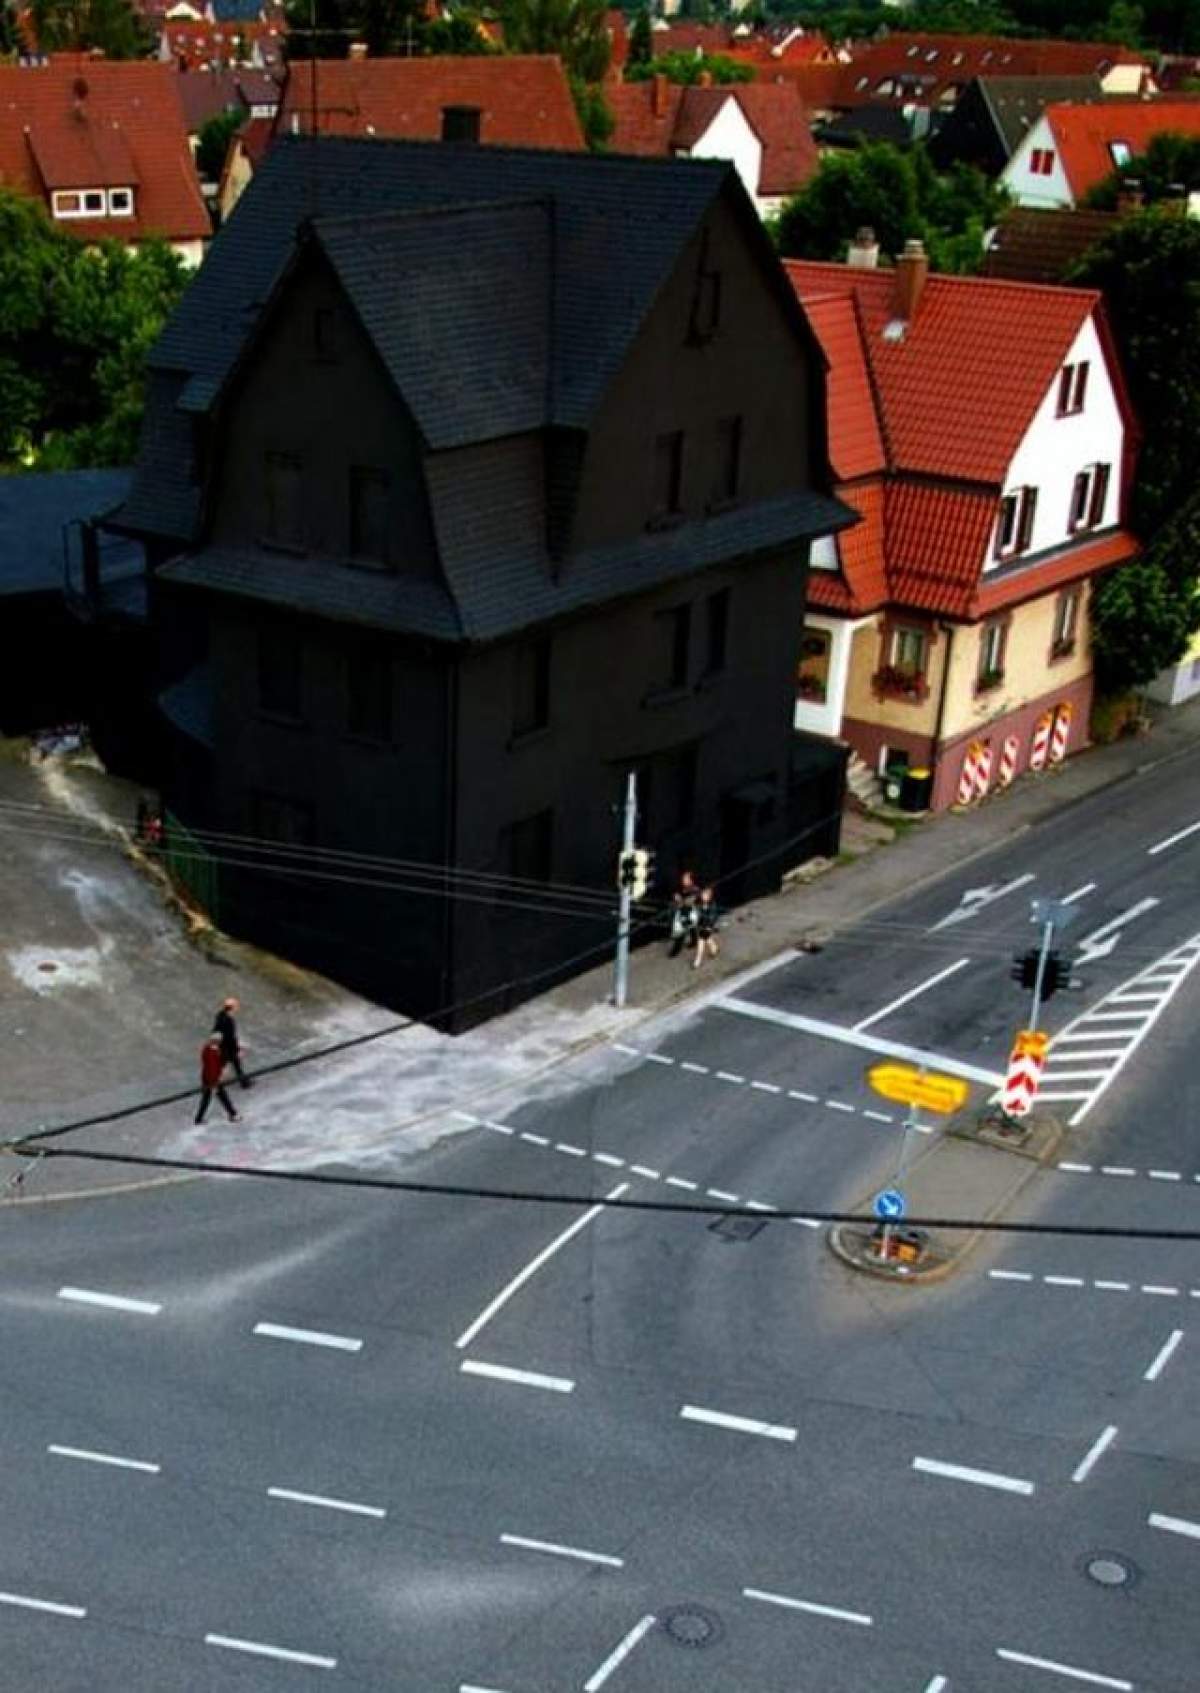 Incredibil! Uite cum arată casa neagră din Germania!